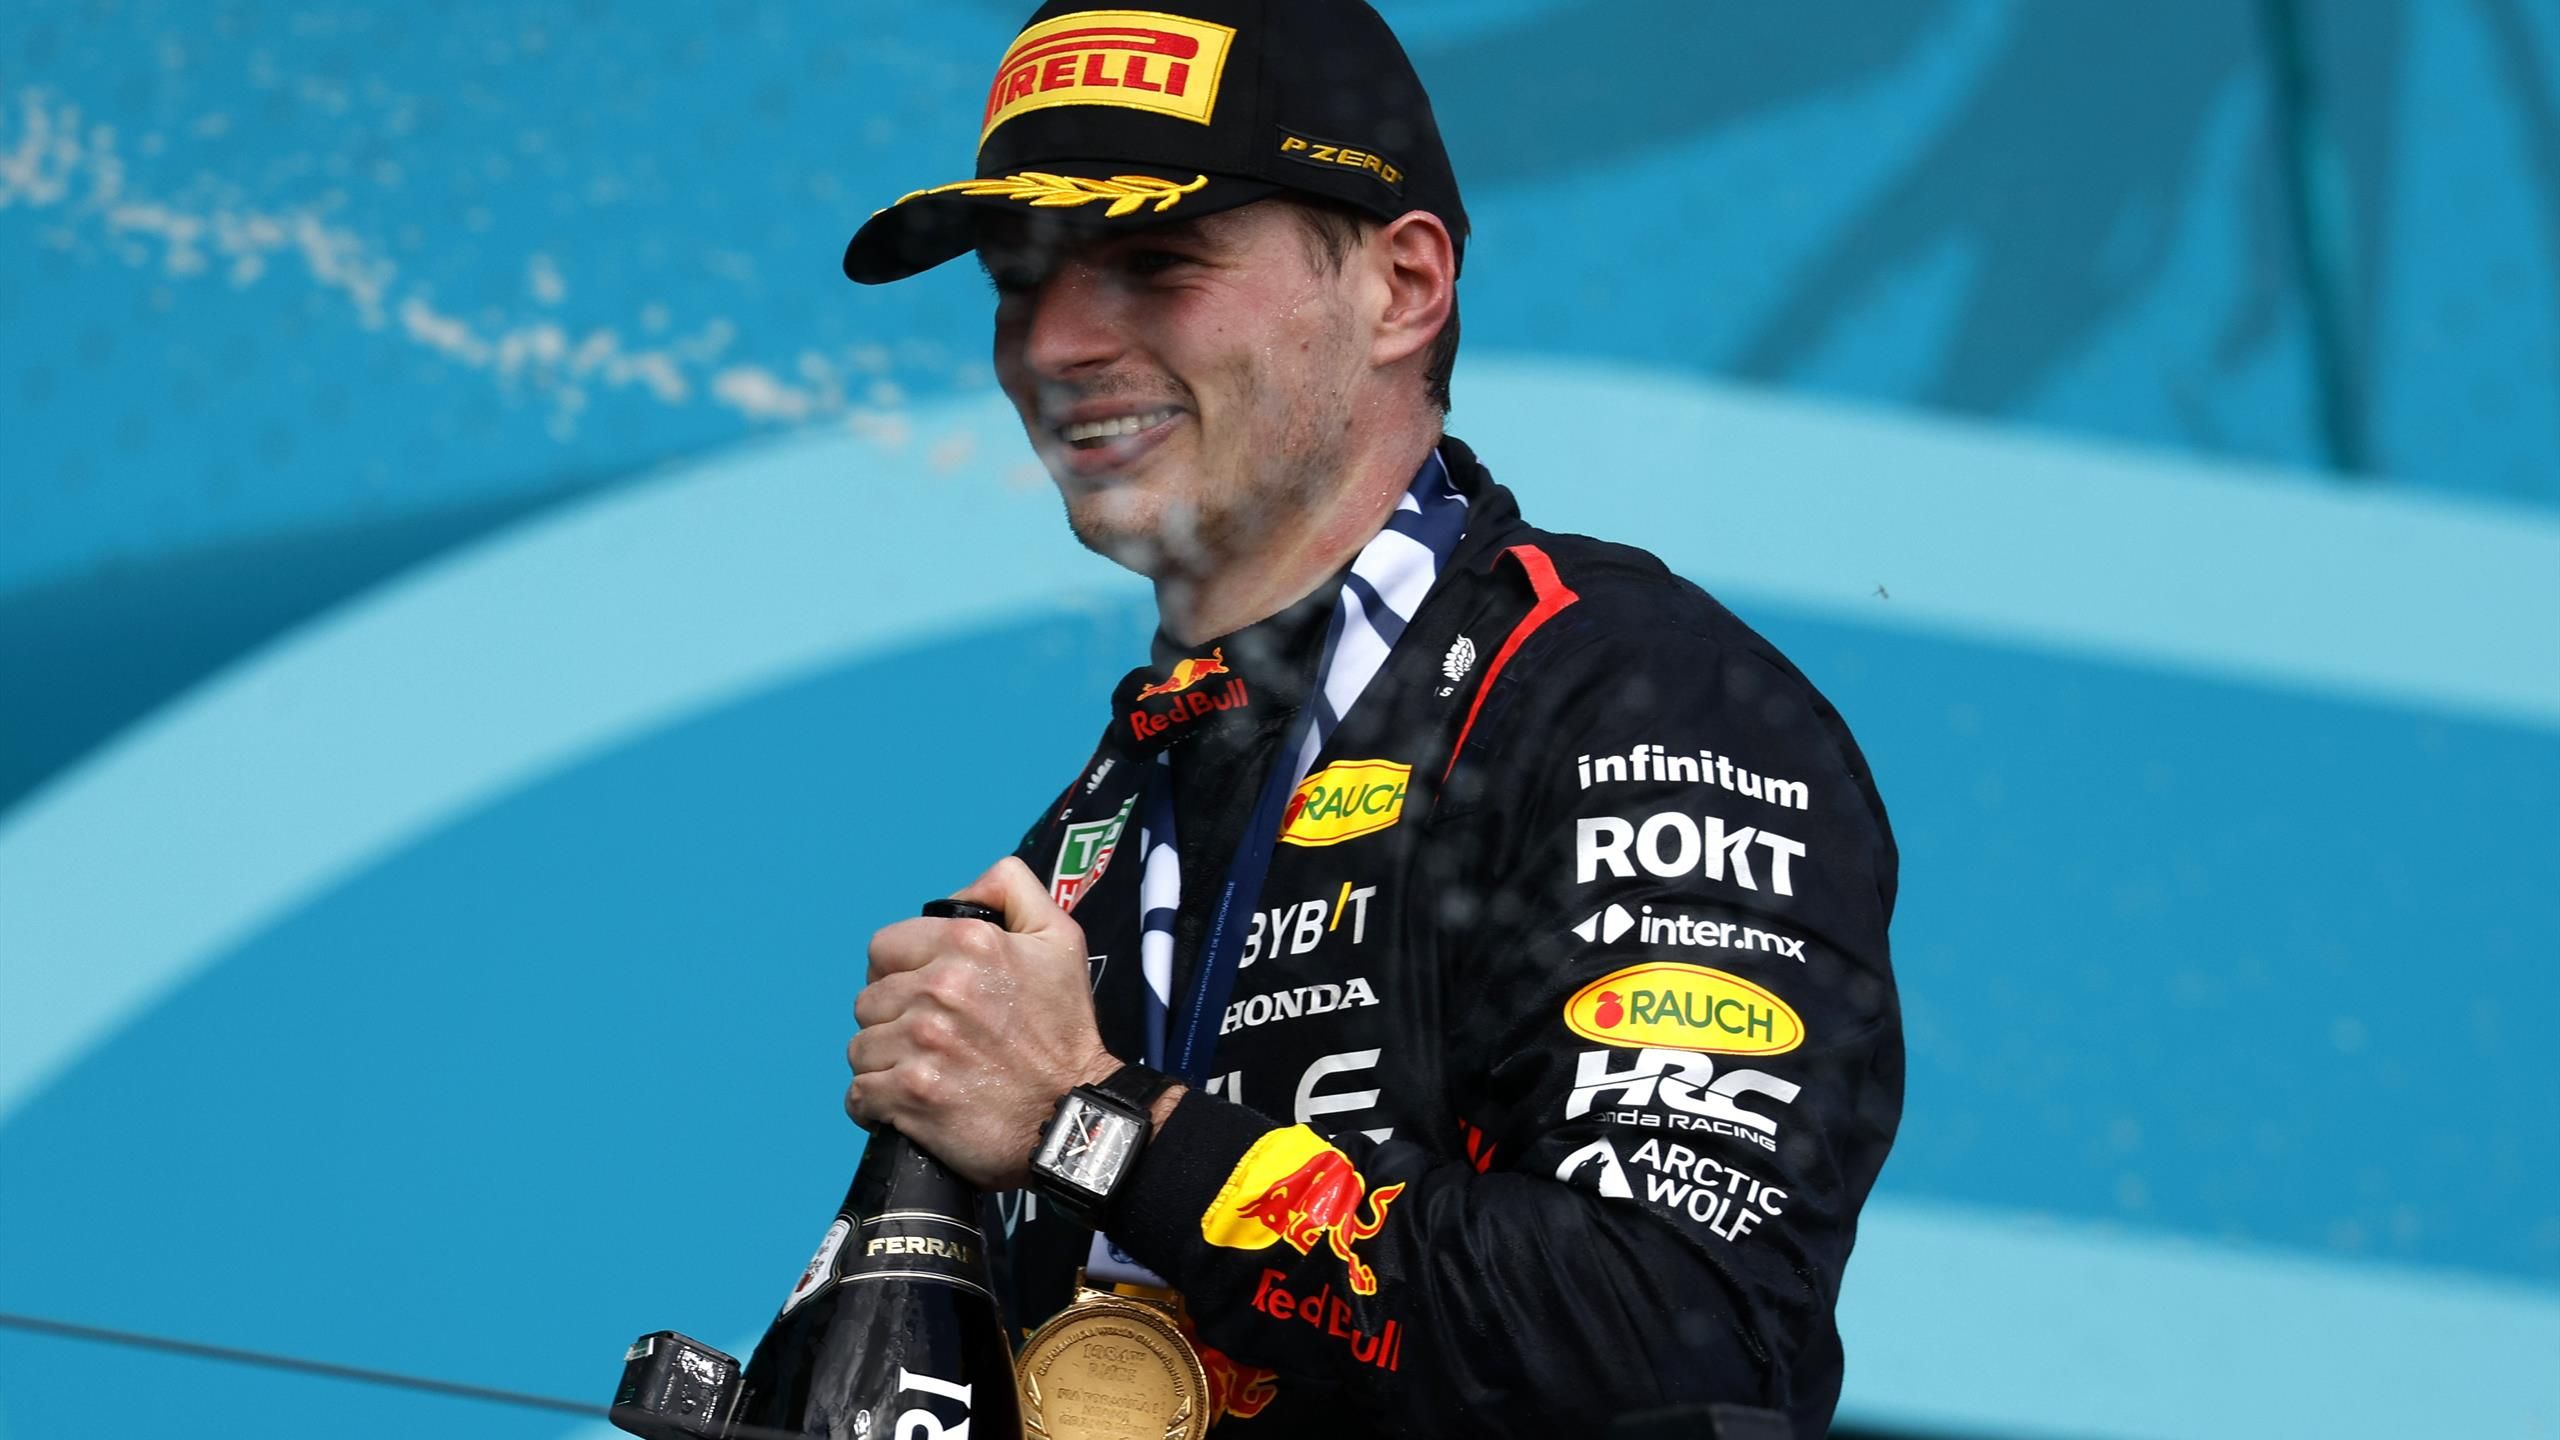 Beoordeling Heb geleerd Mentor F1 | Max Verstappen reageert op boegeroep publiek in Miami - “Het hoort  erbij” - Eurosport